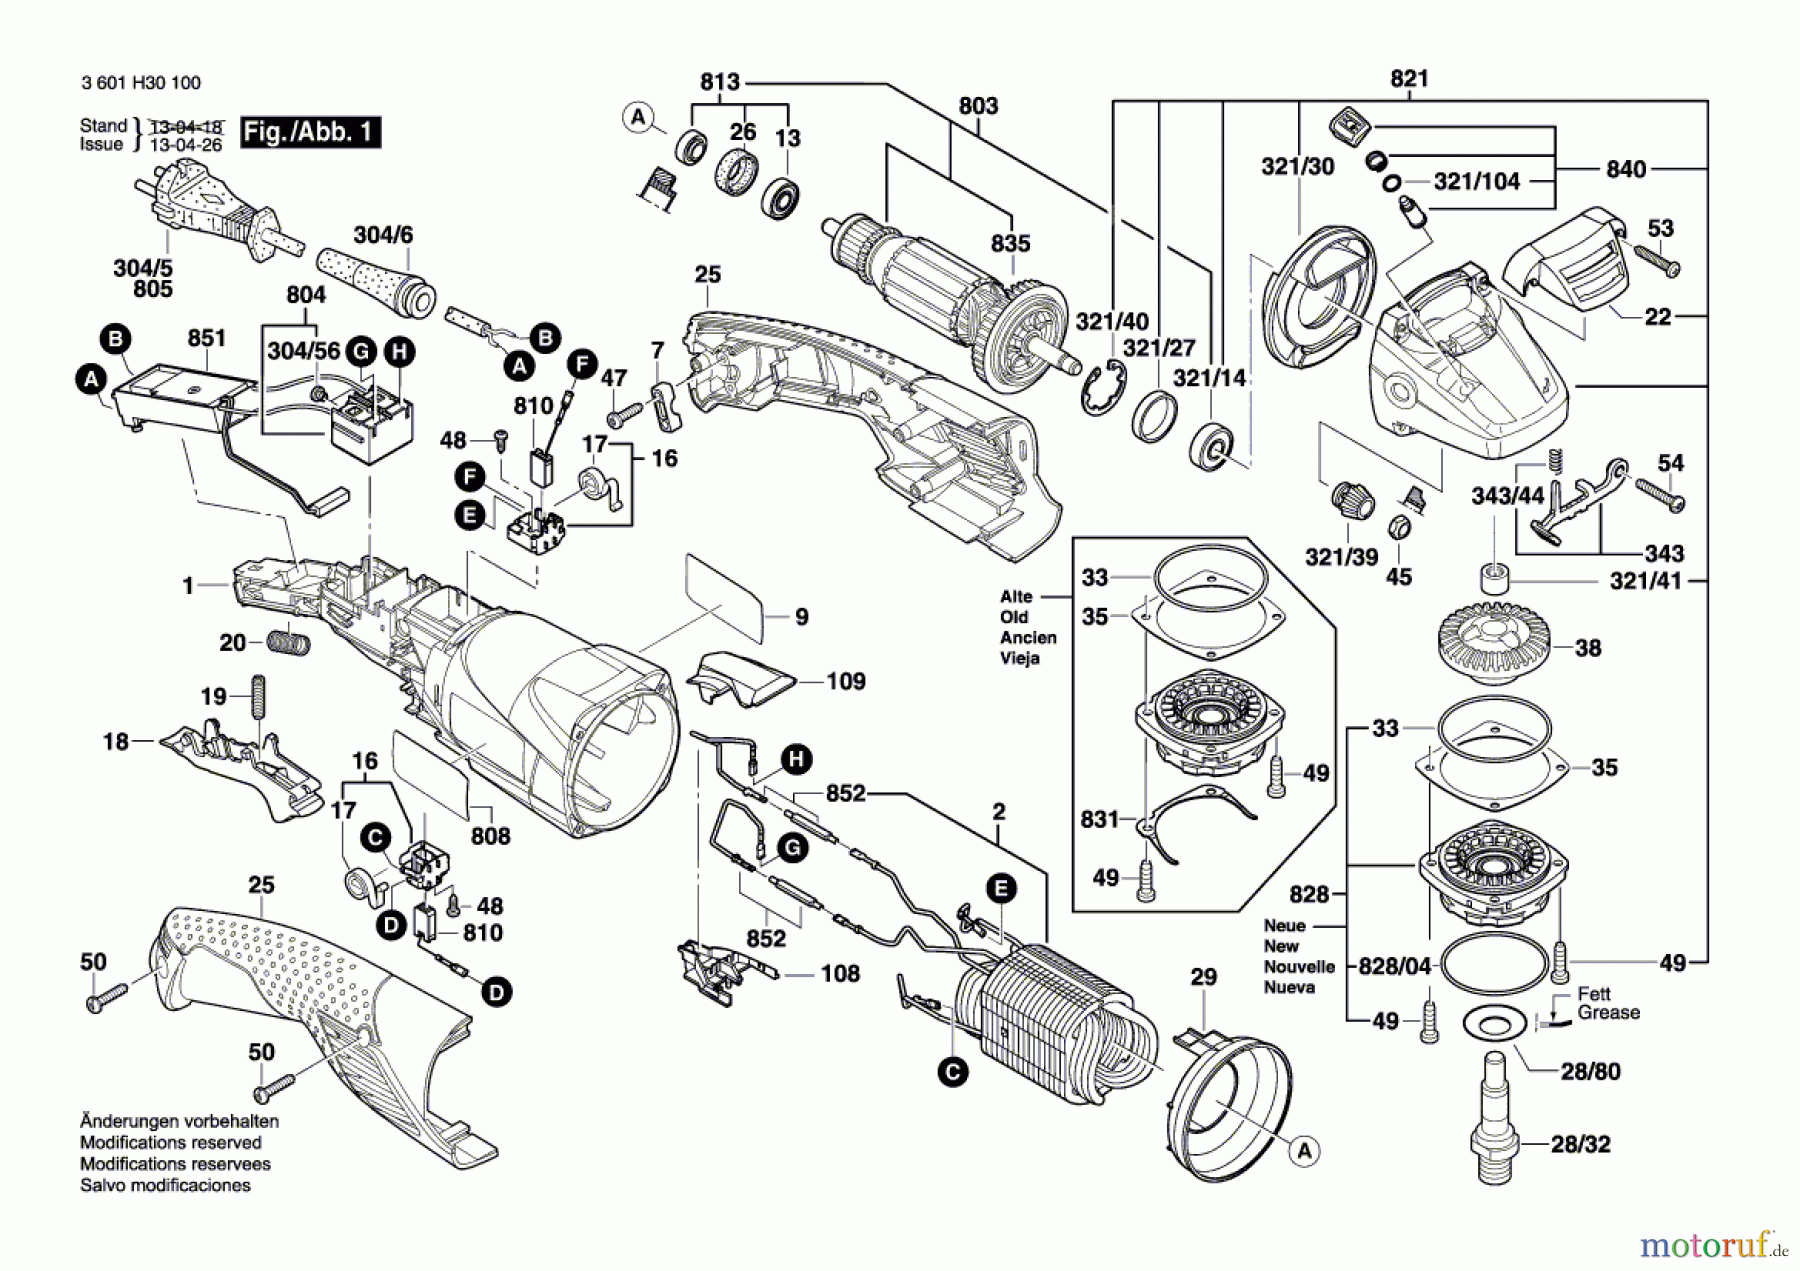  Bosch Werkzeug Winkelschleifer GWS 11-125 CIH Seite 1